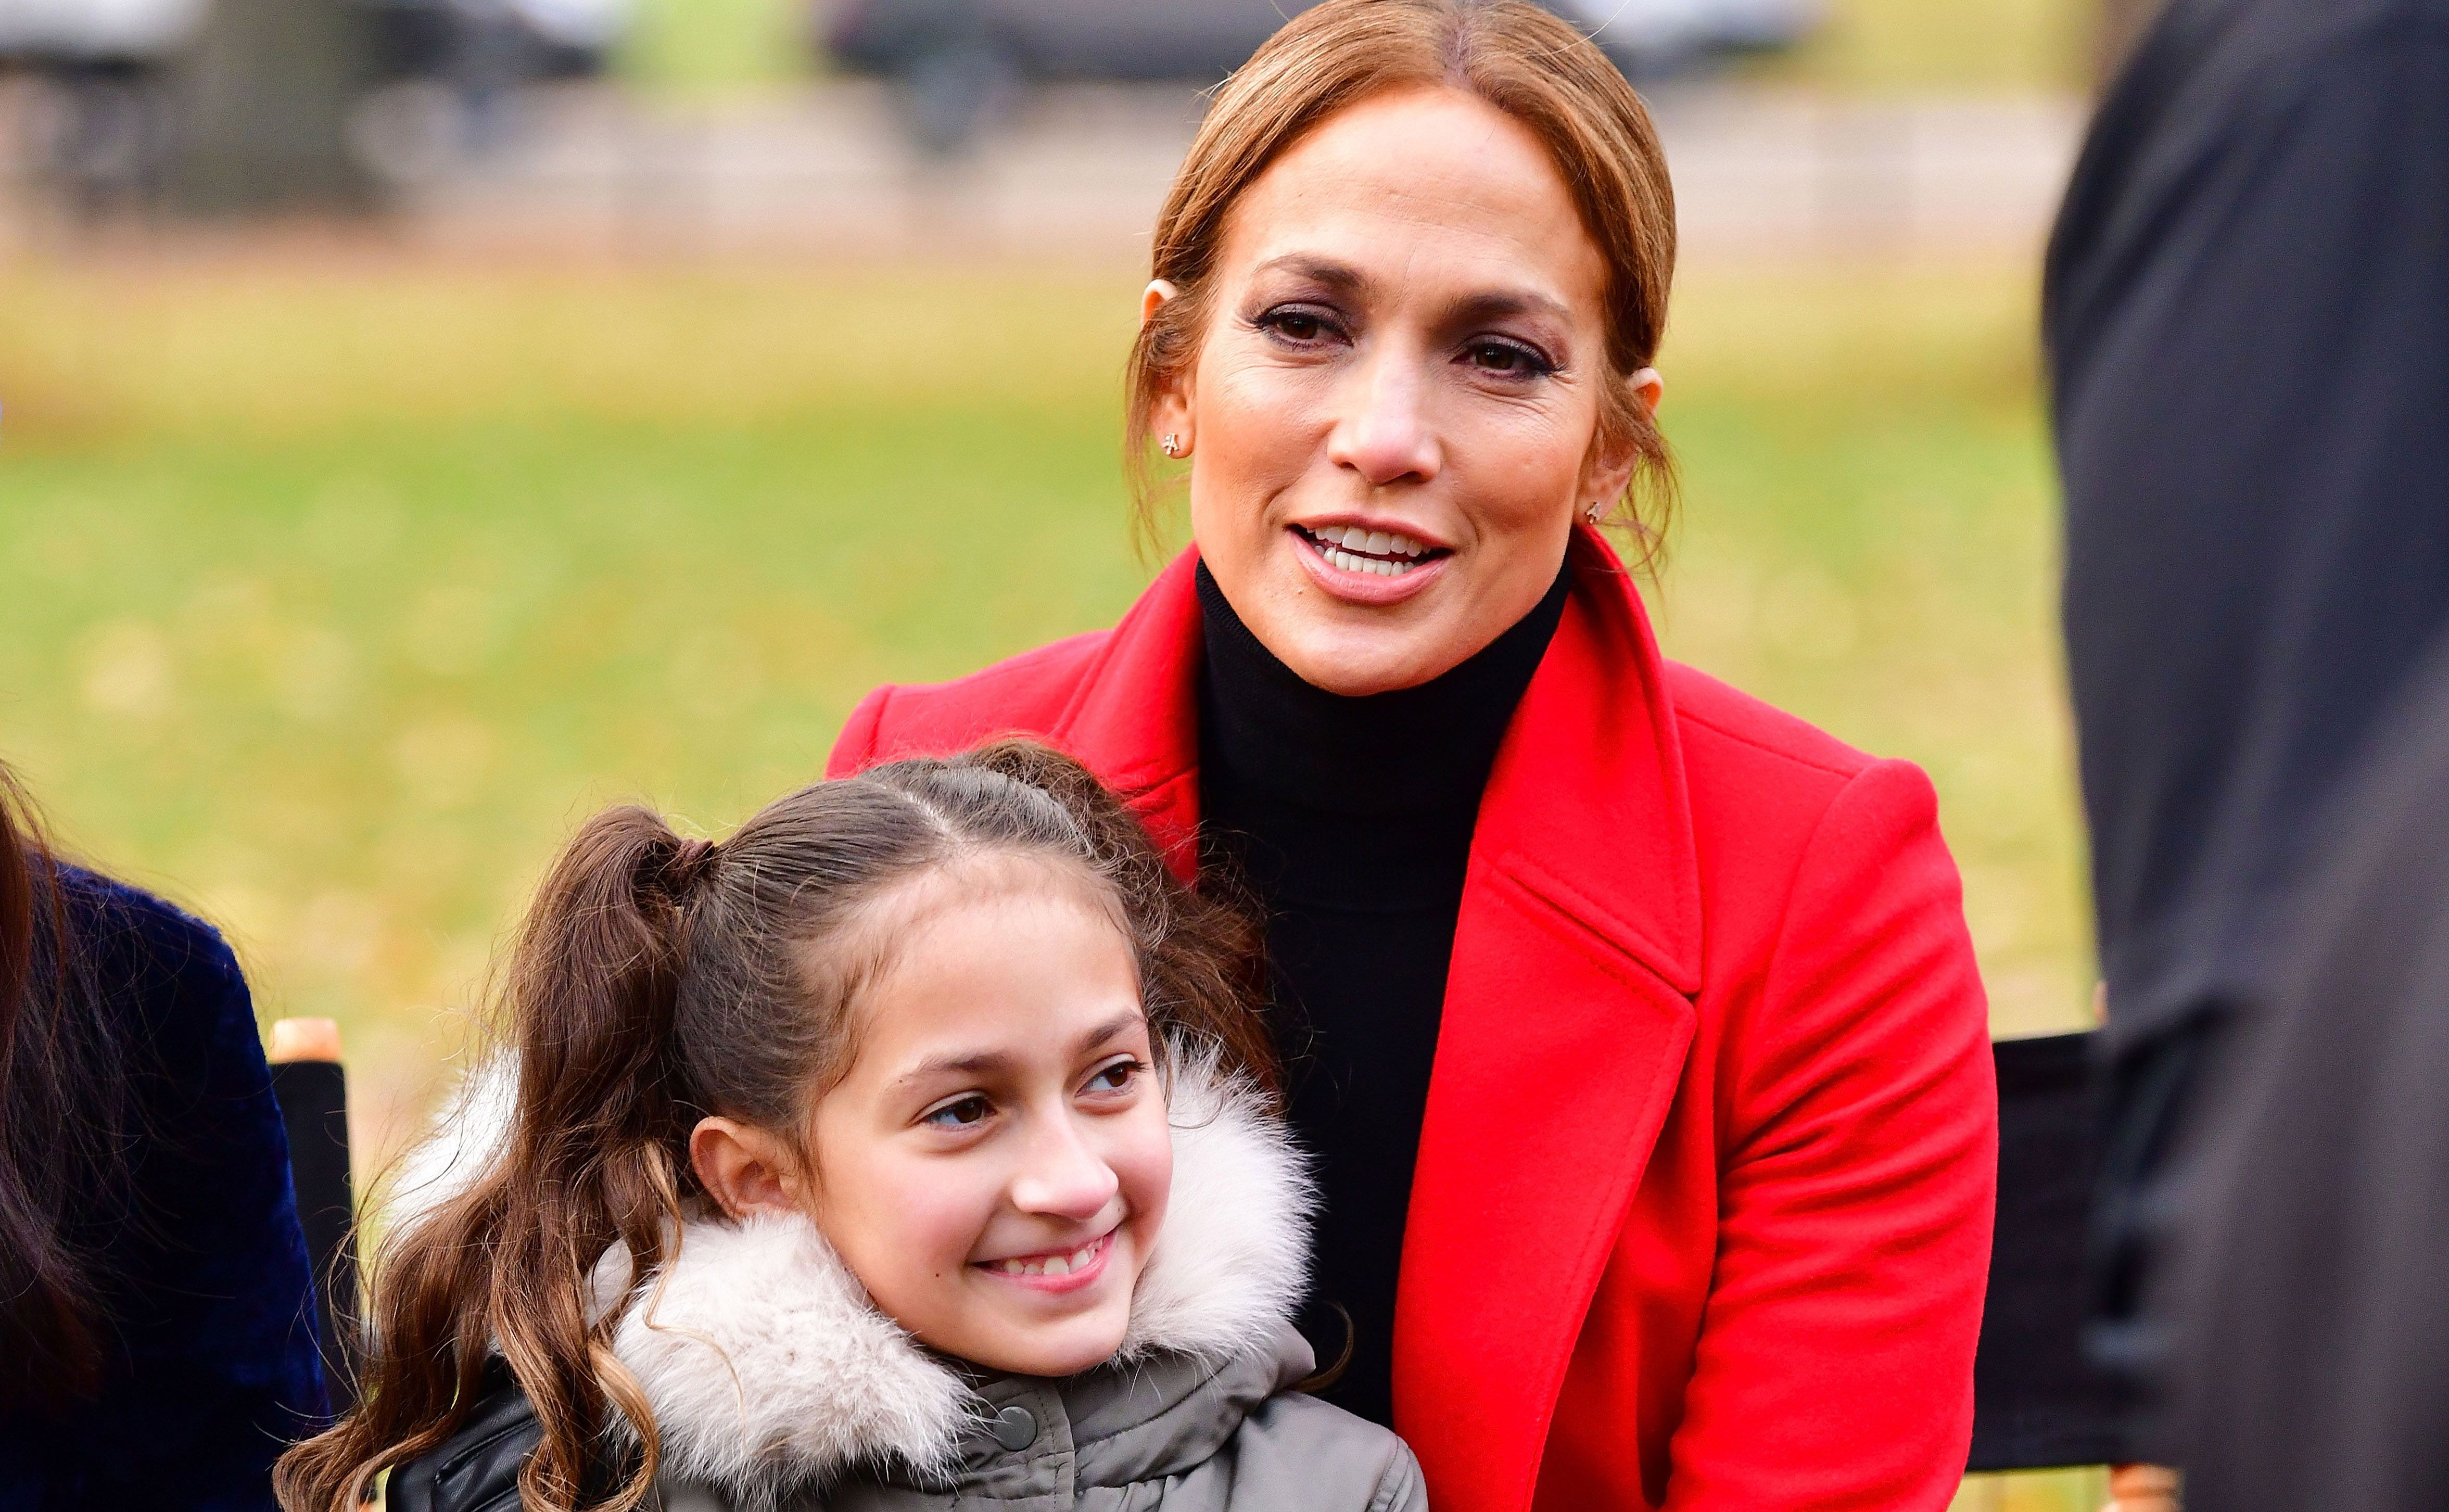 Jennifer Lopez’s Daughter Shows off Her Singing Skills on Instagram!